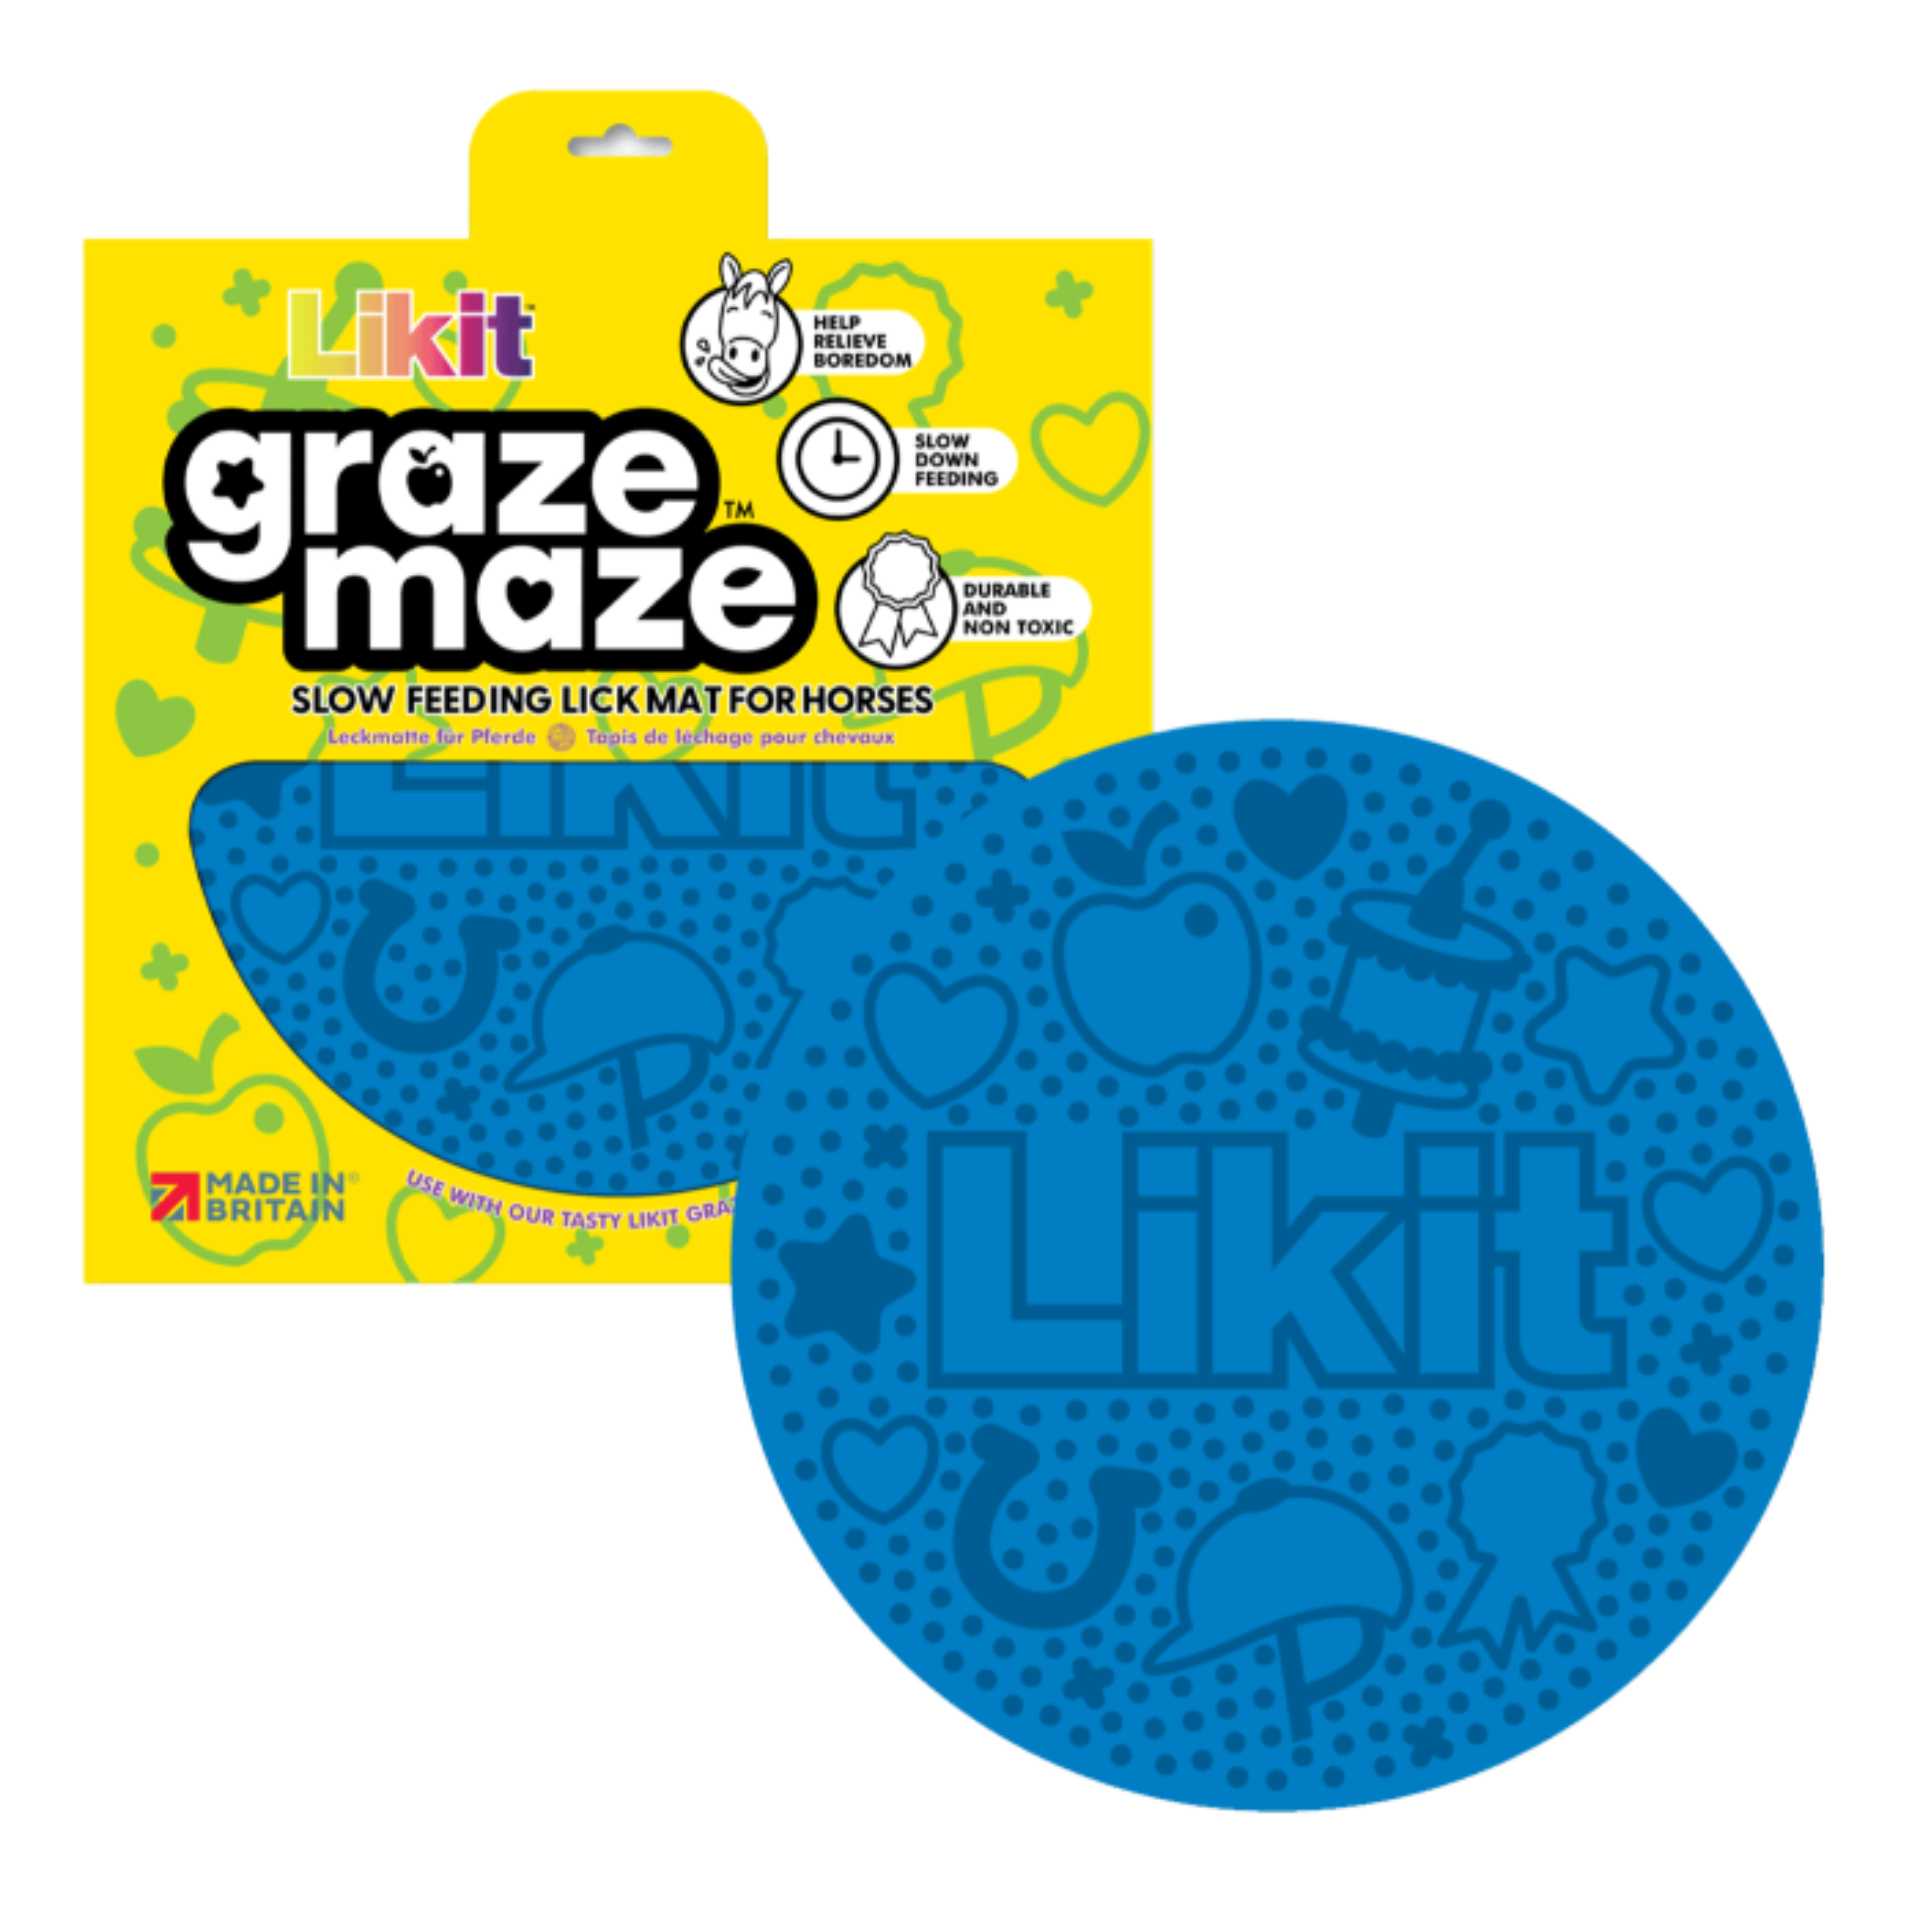 Likit Graze Maze blue